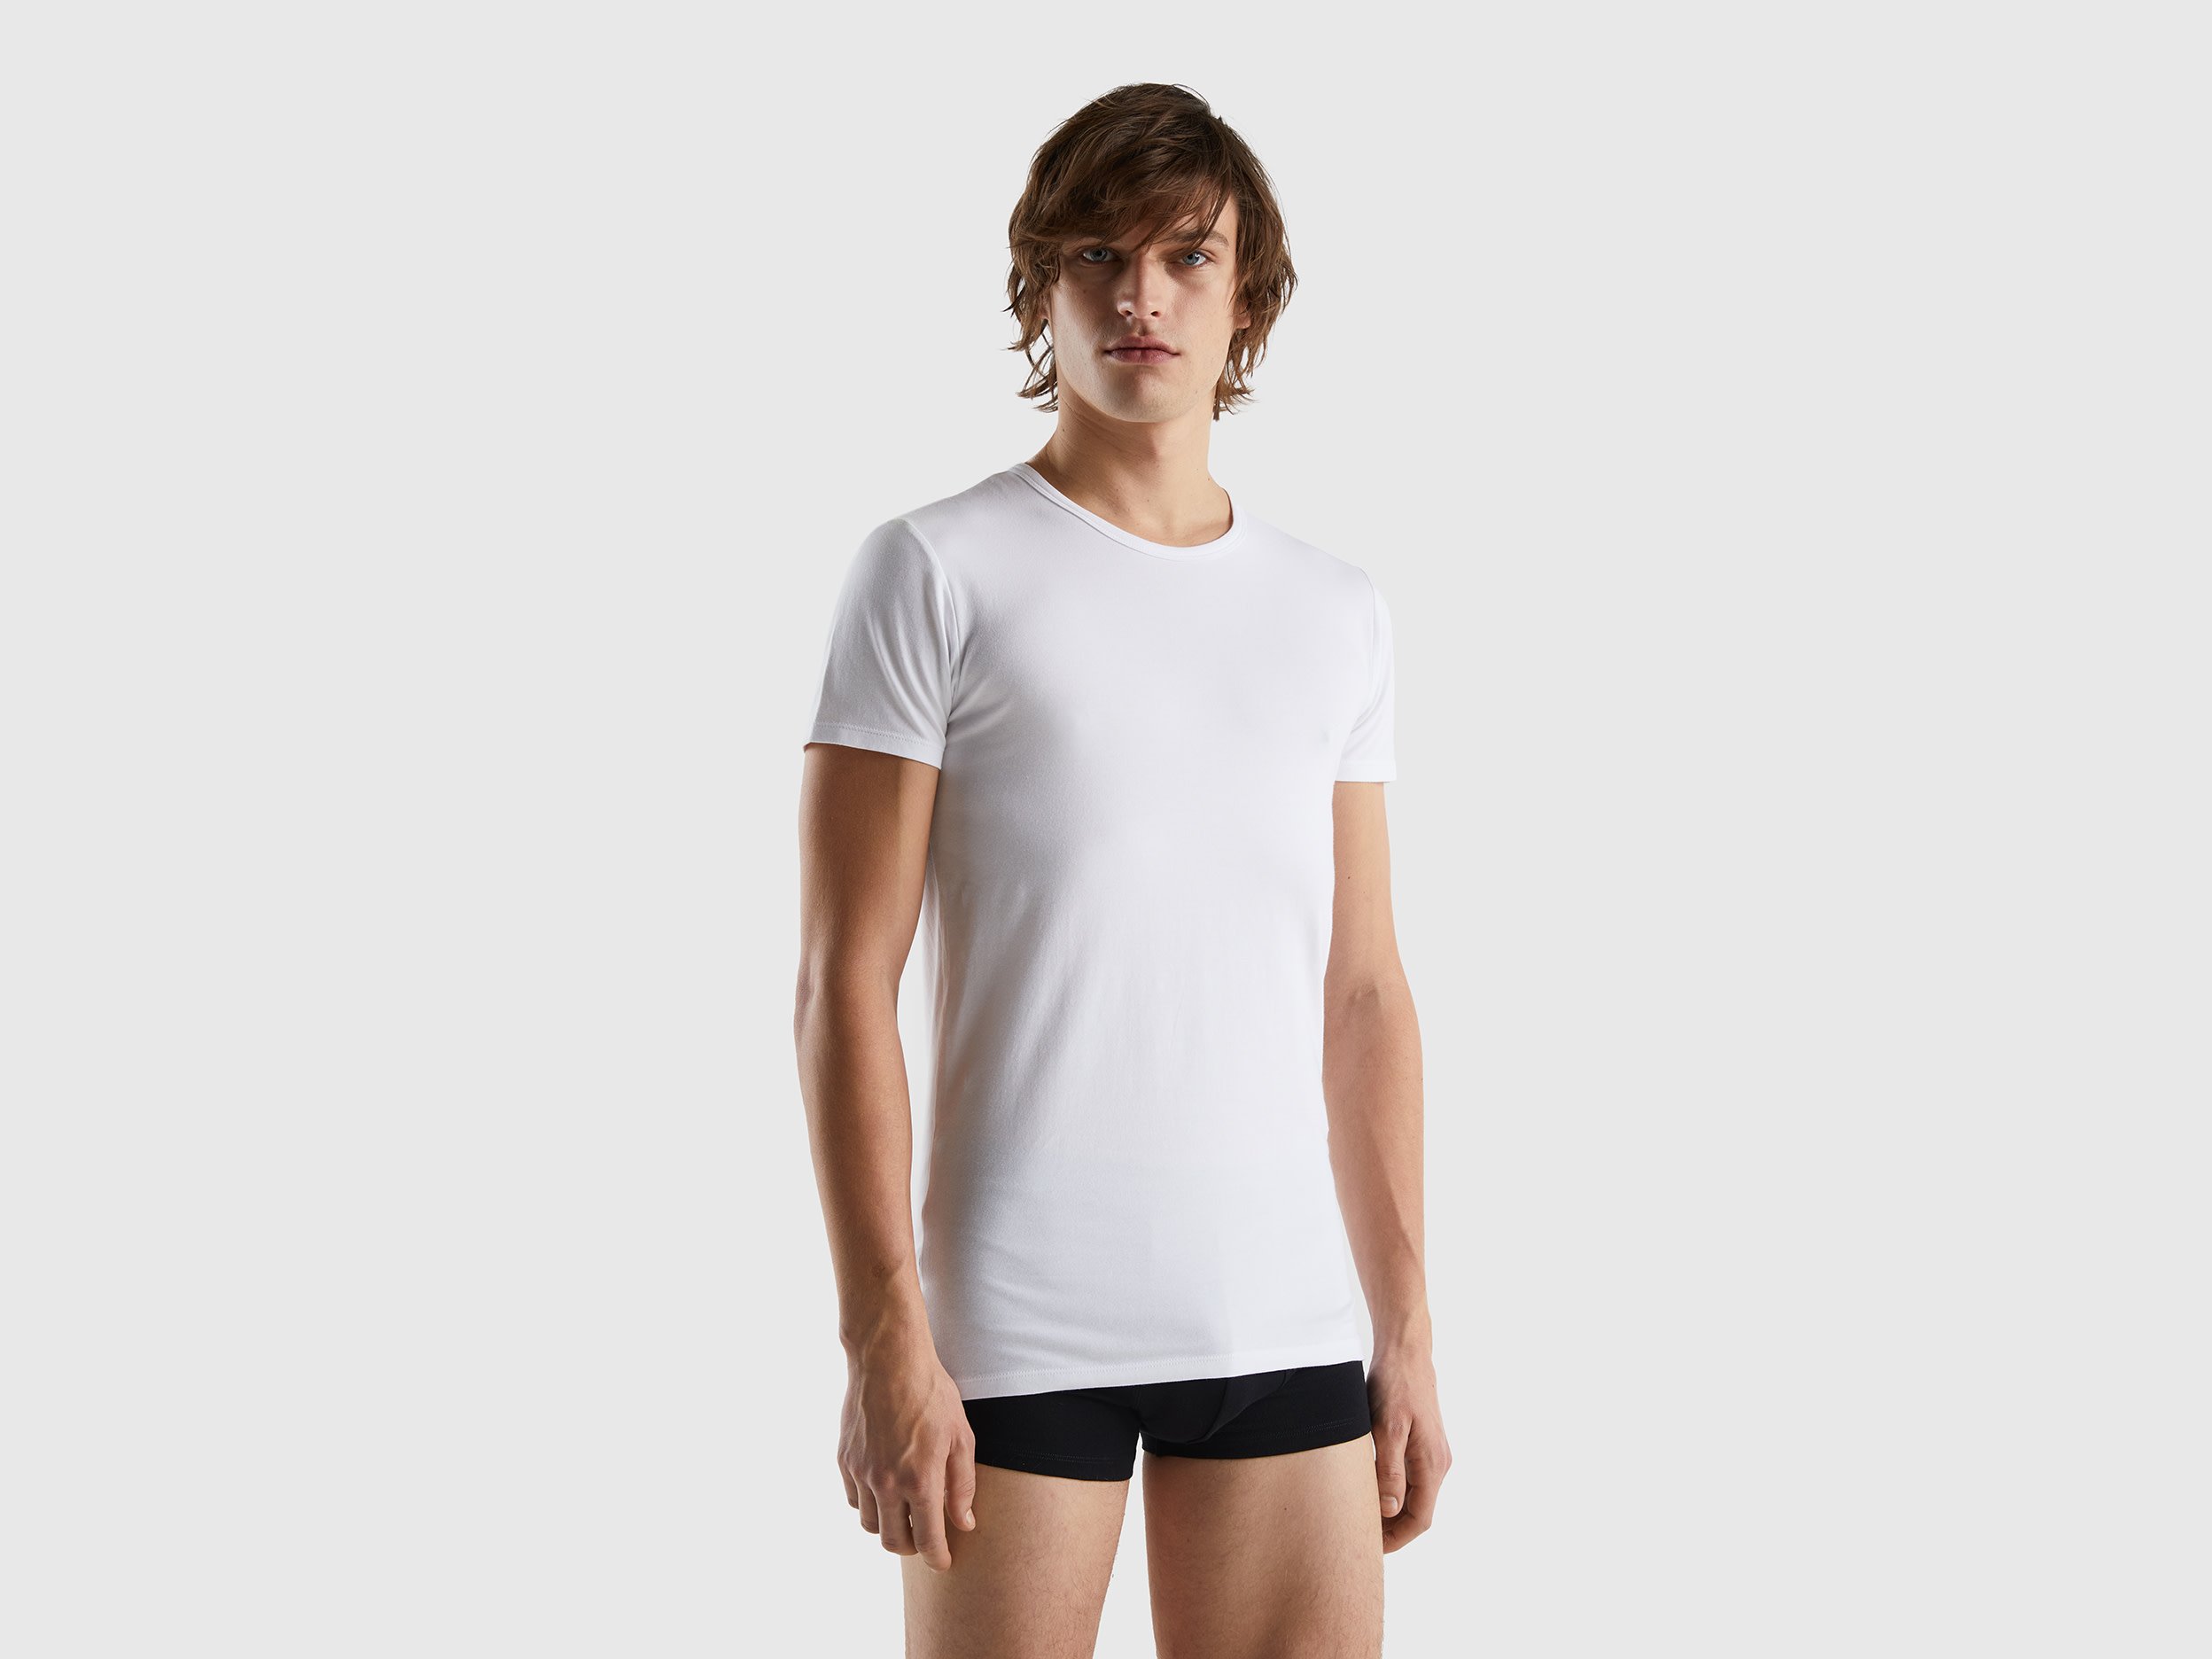 Benetton, Organic Stretch Cotton T-shirt, size XL, White, Men